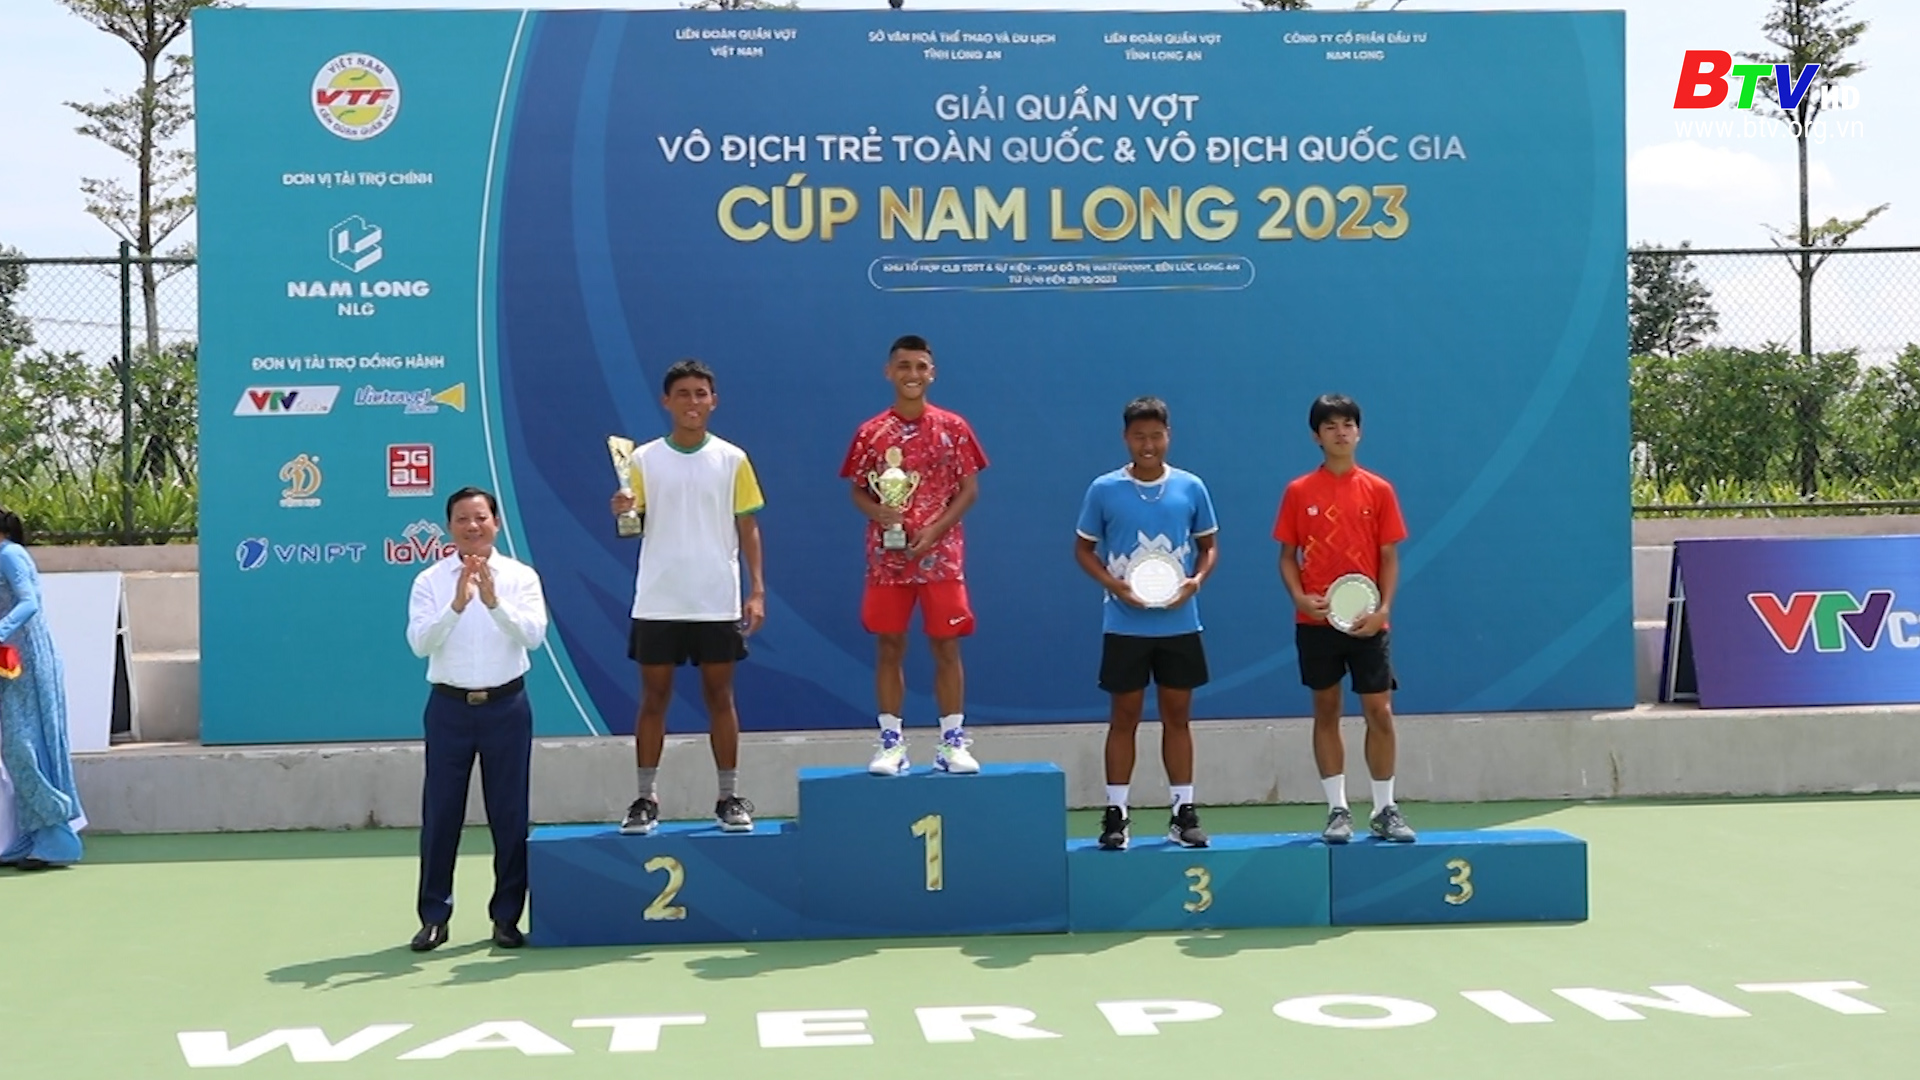 Giải quần vợt vô địch trẻ toàn quốc cúp Nam Long 2023, Bình Dương đạt thành tích ấn tượng